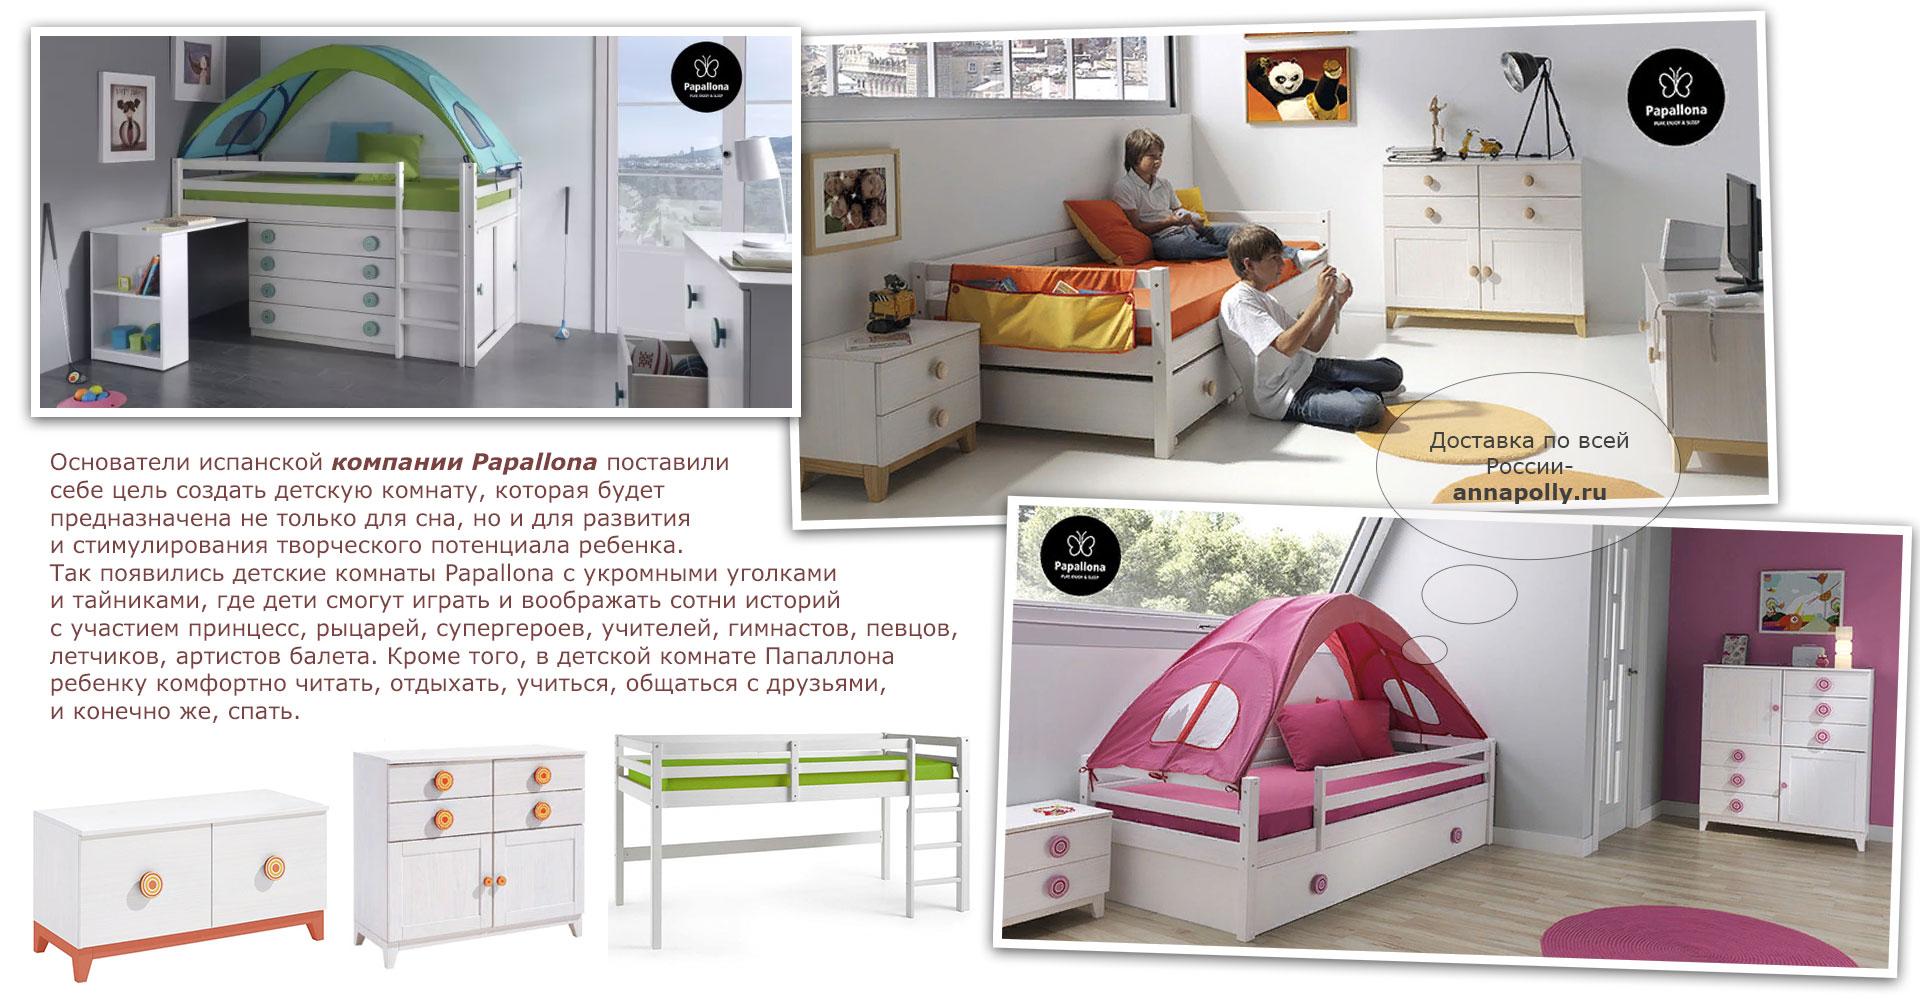 фото Комплект штор к игровой кровати Papallona PP-201 (Папаллона)